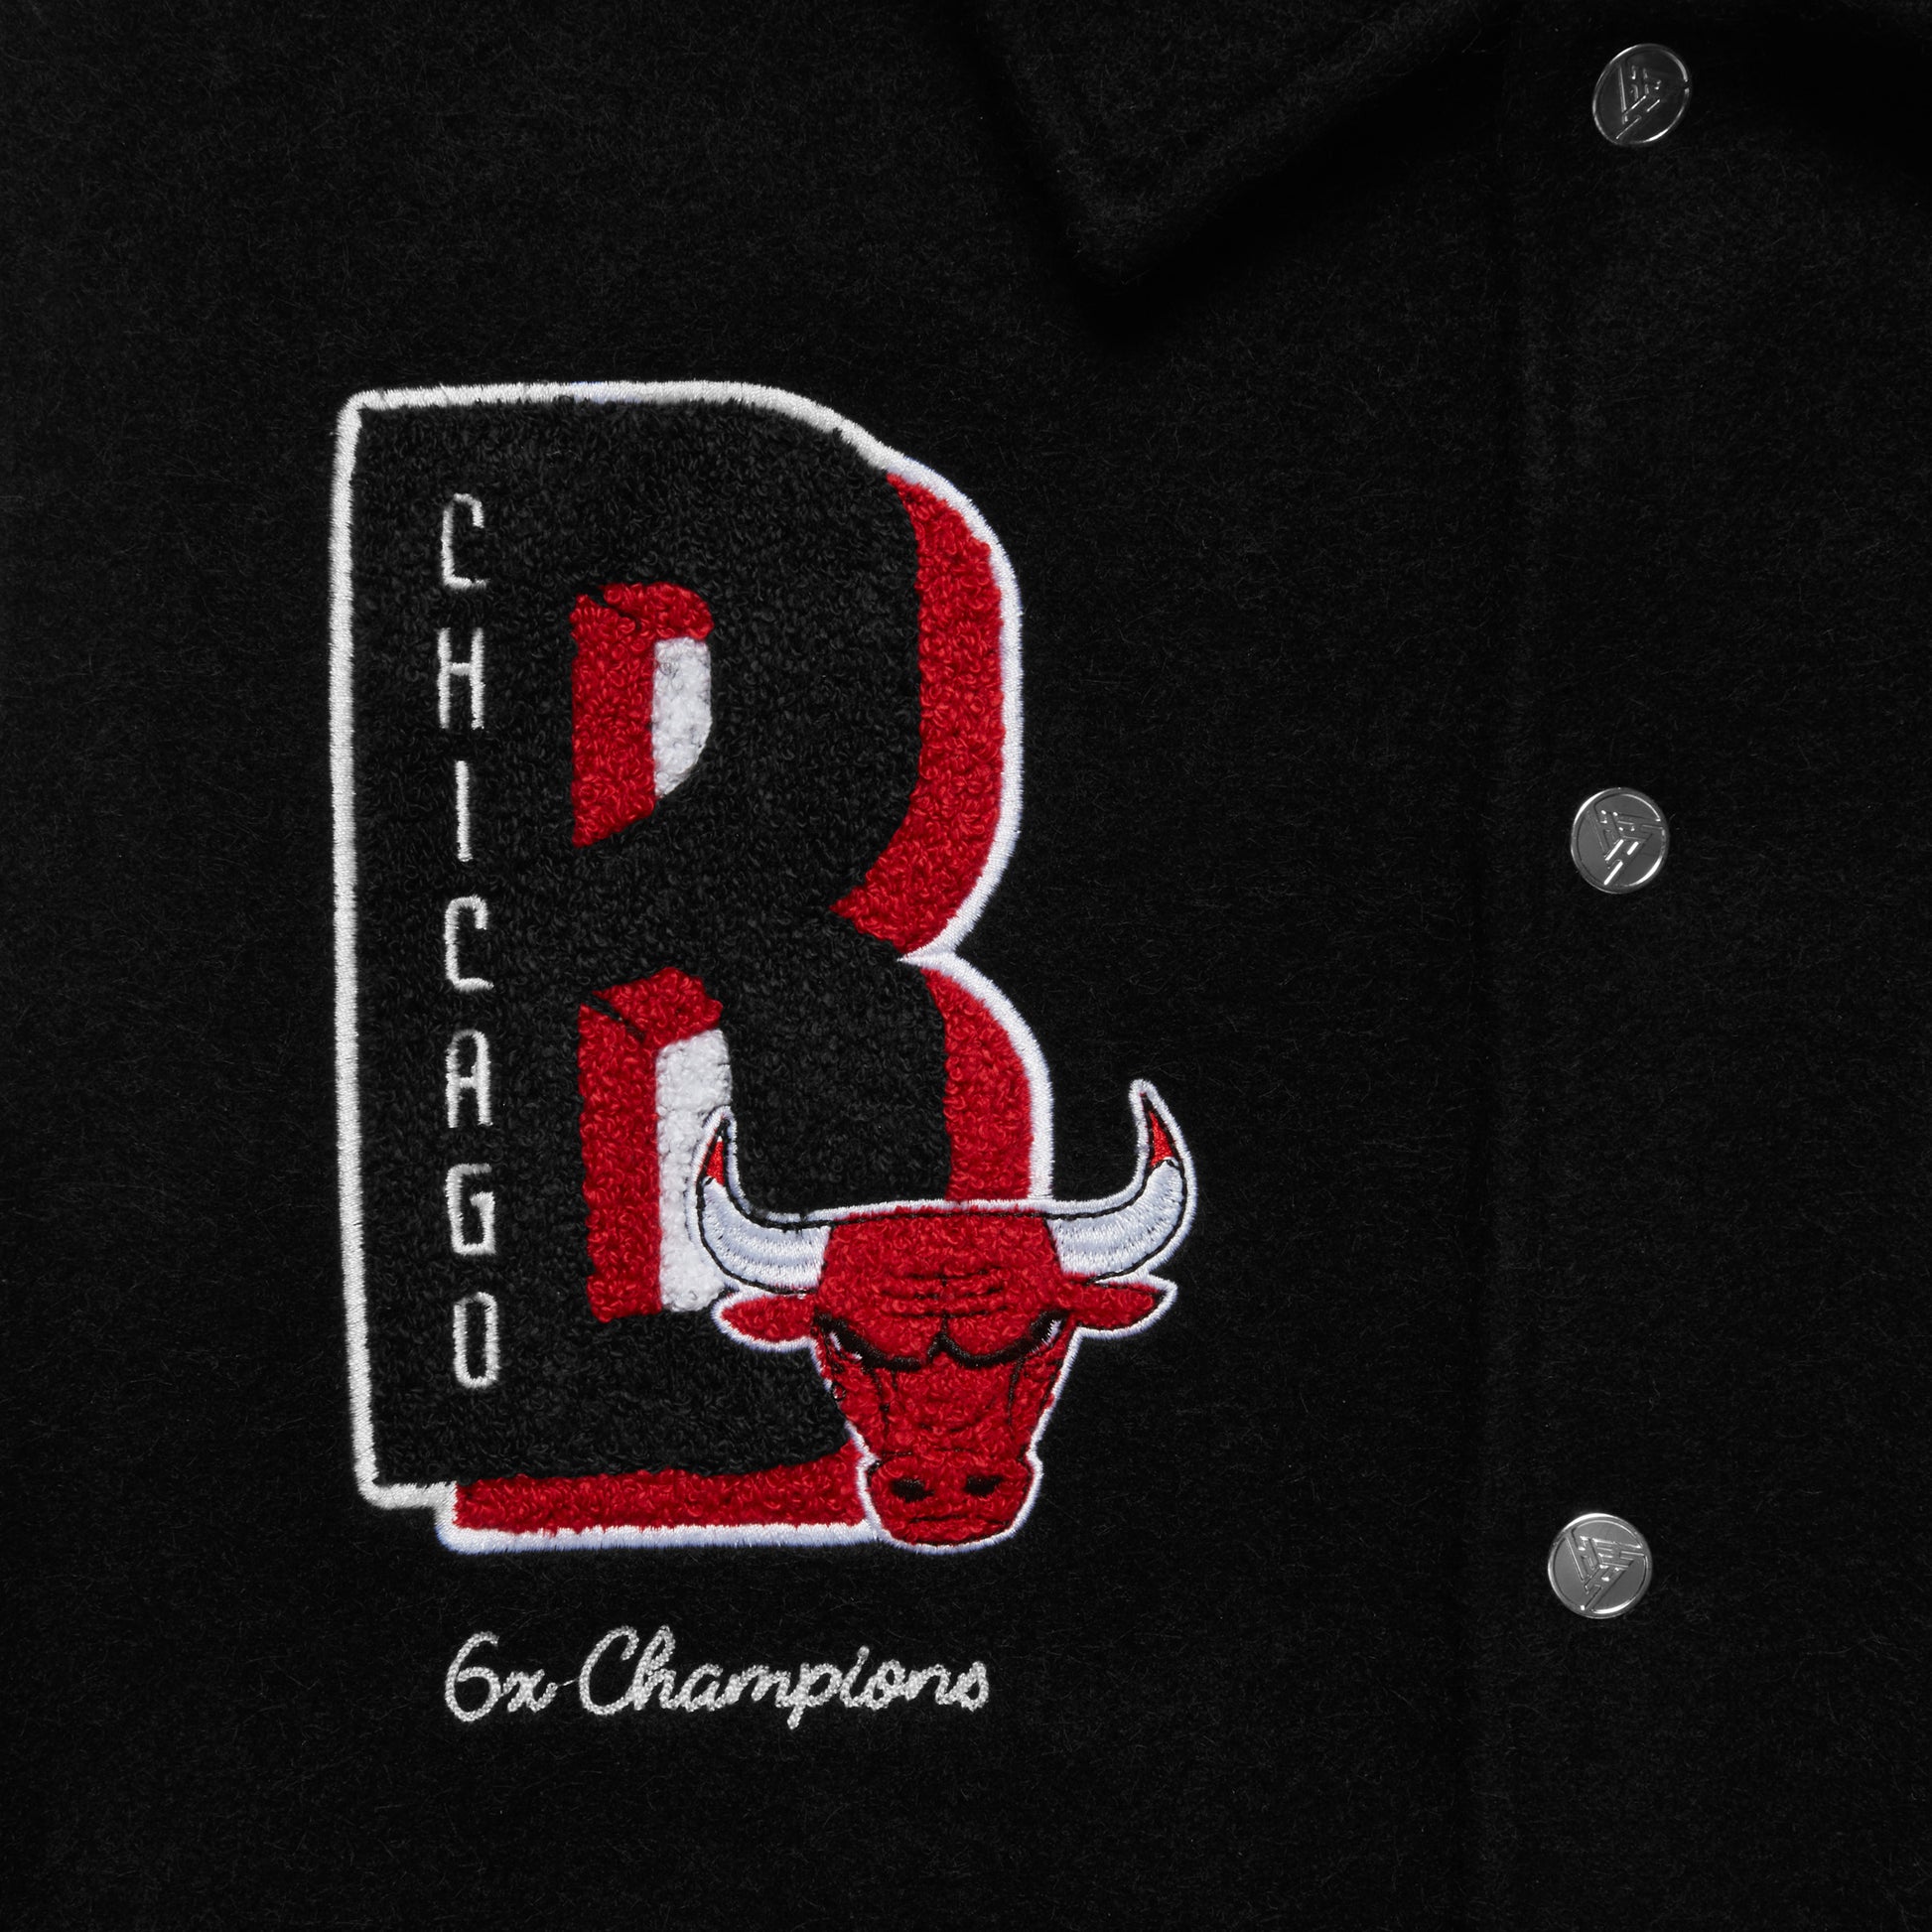 NBA Chicago Bulls Varsity Jacket (Black) 3XL